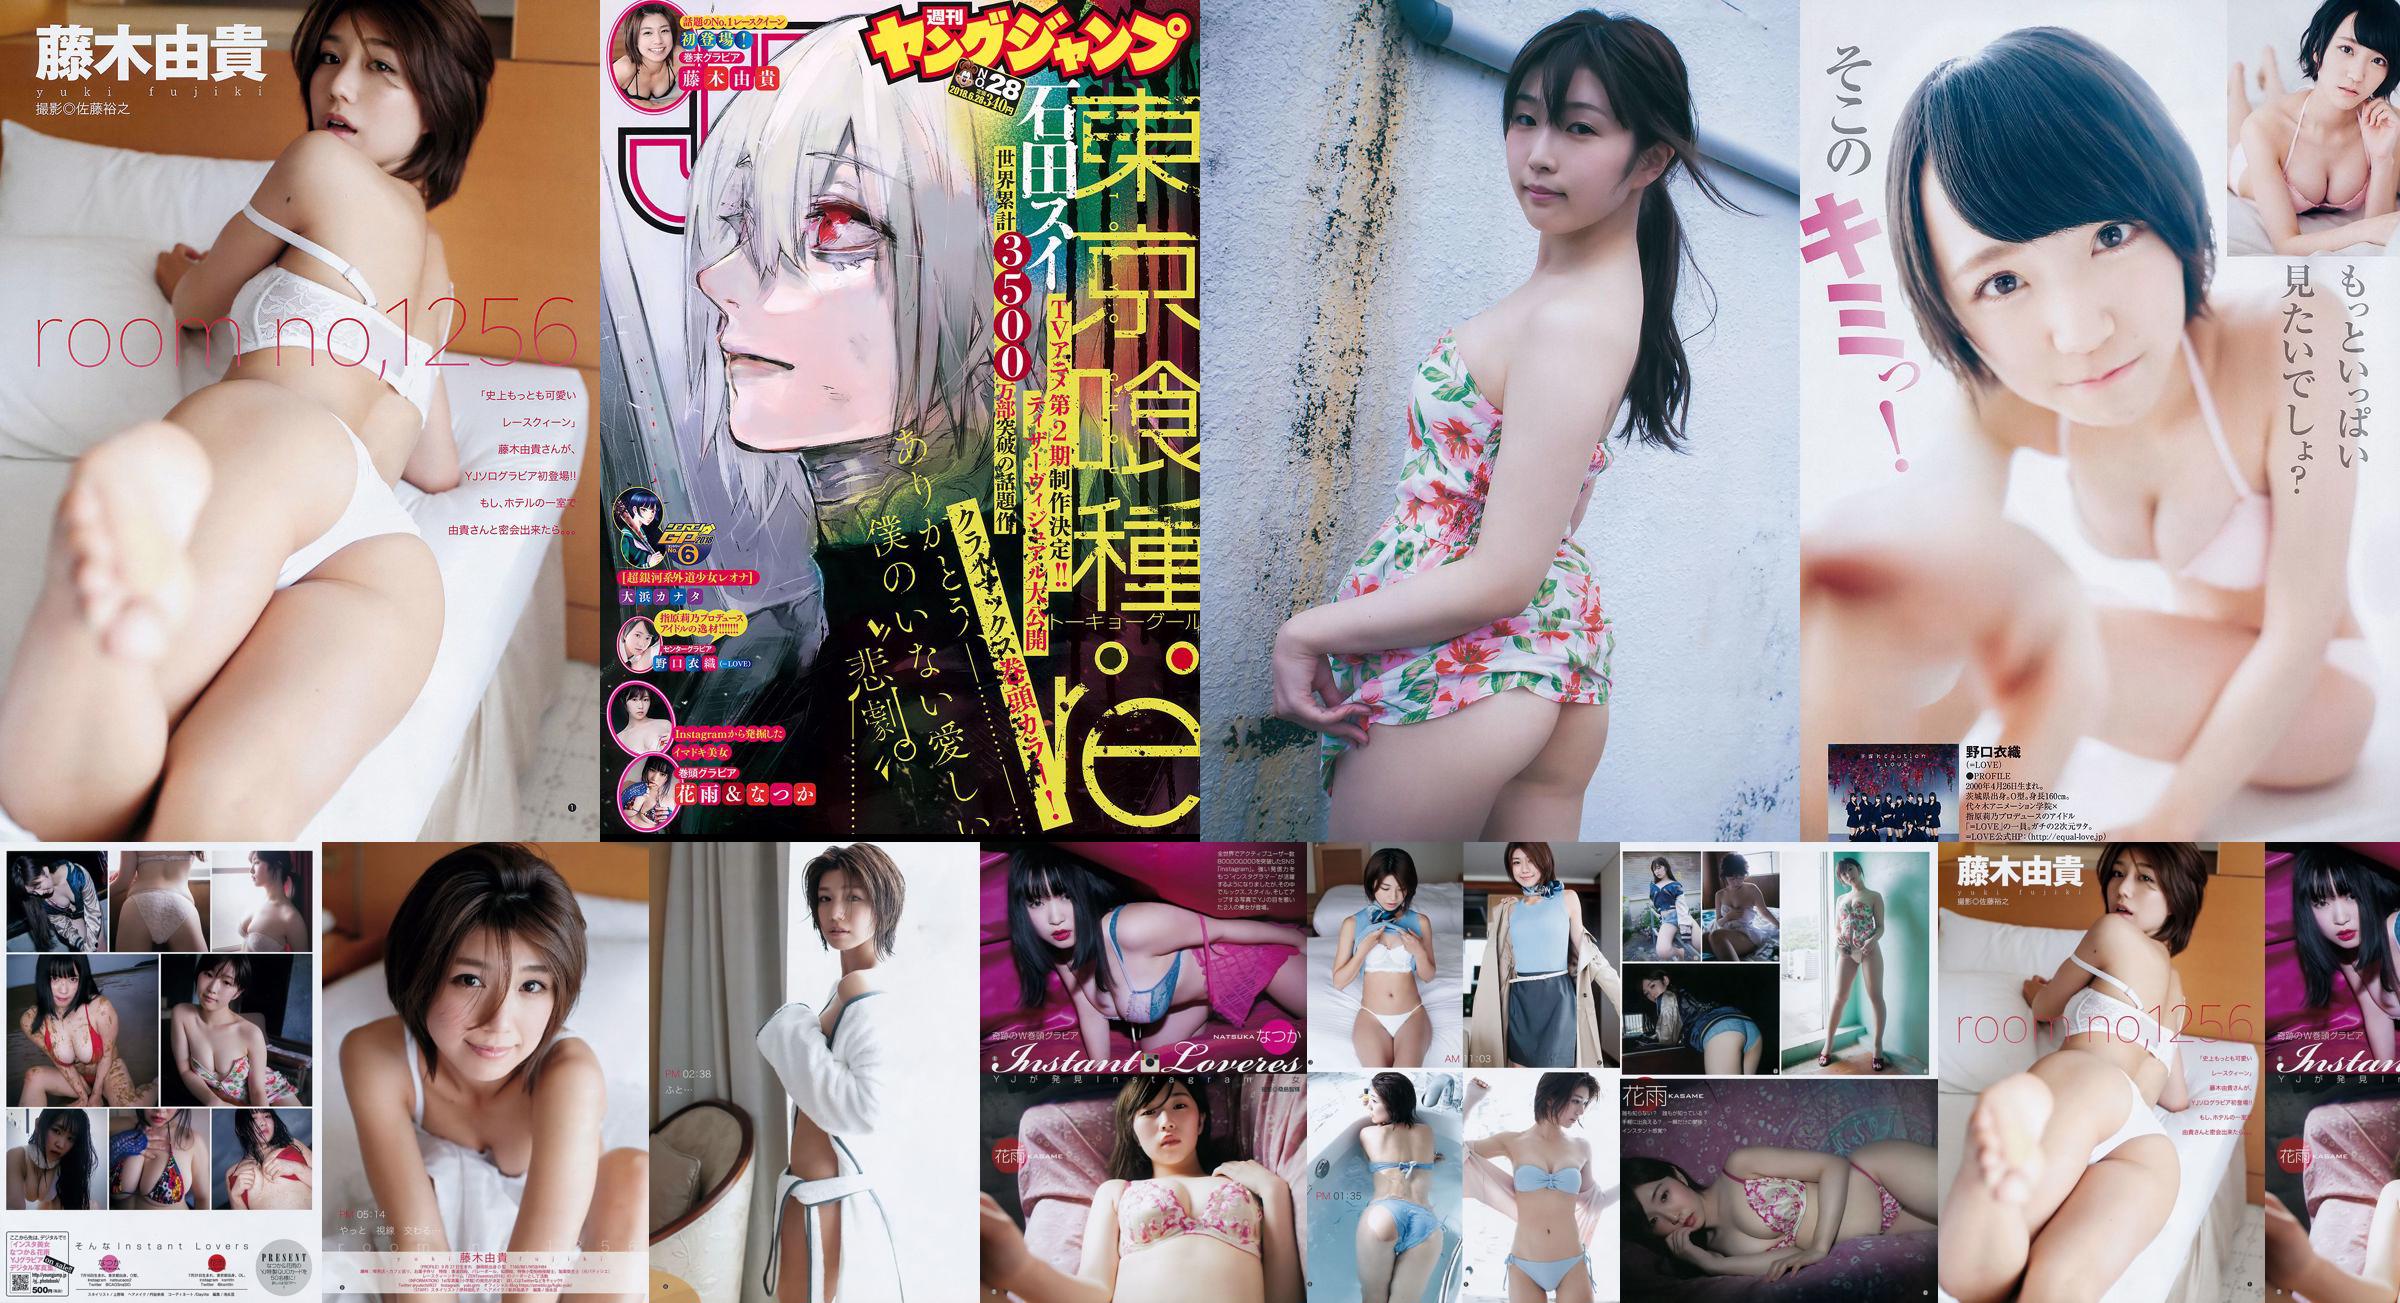 Nozuka Hanayu Noguchi Yiori Fujiki Yuki [Wöchentlicher Jungsprung] 2018 Nr. 28 Fotomagazin No.3c6bce Seite 1